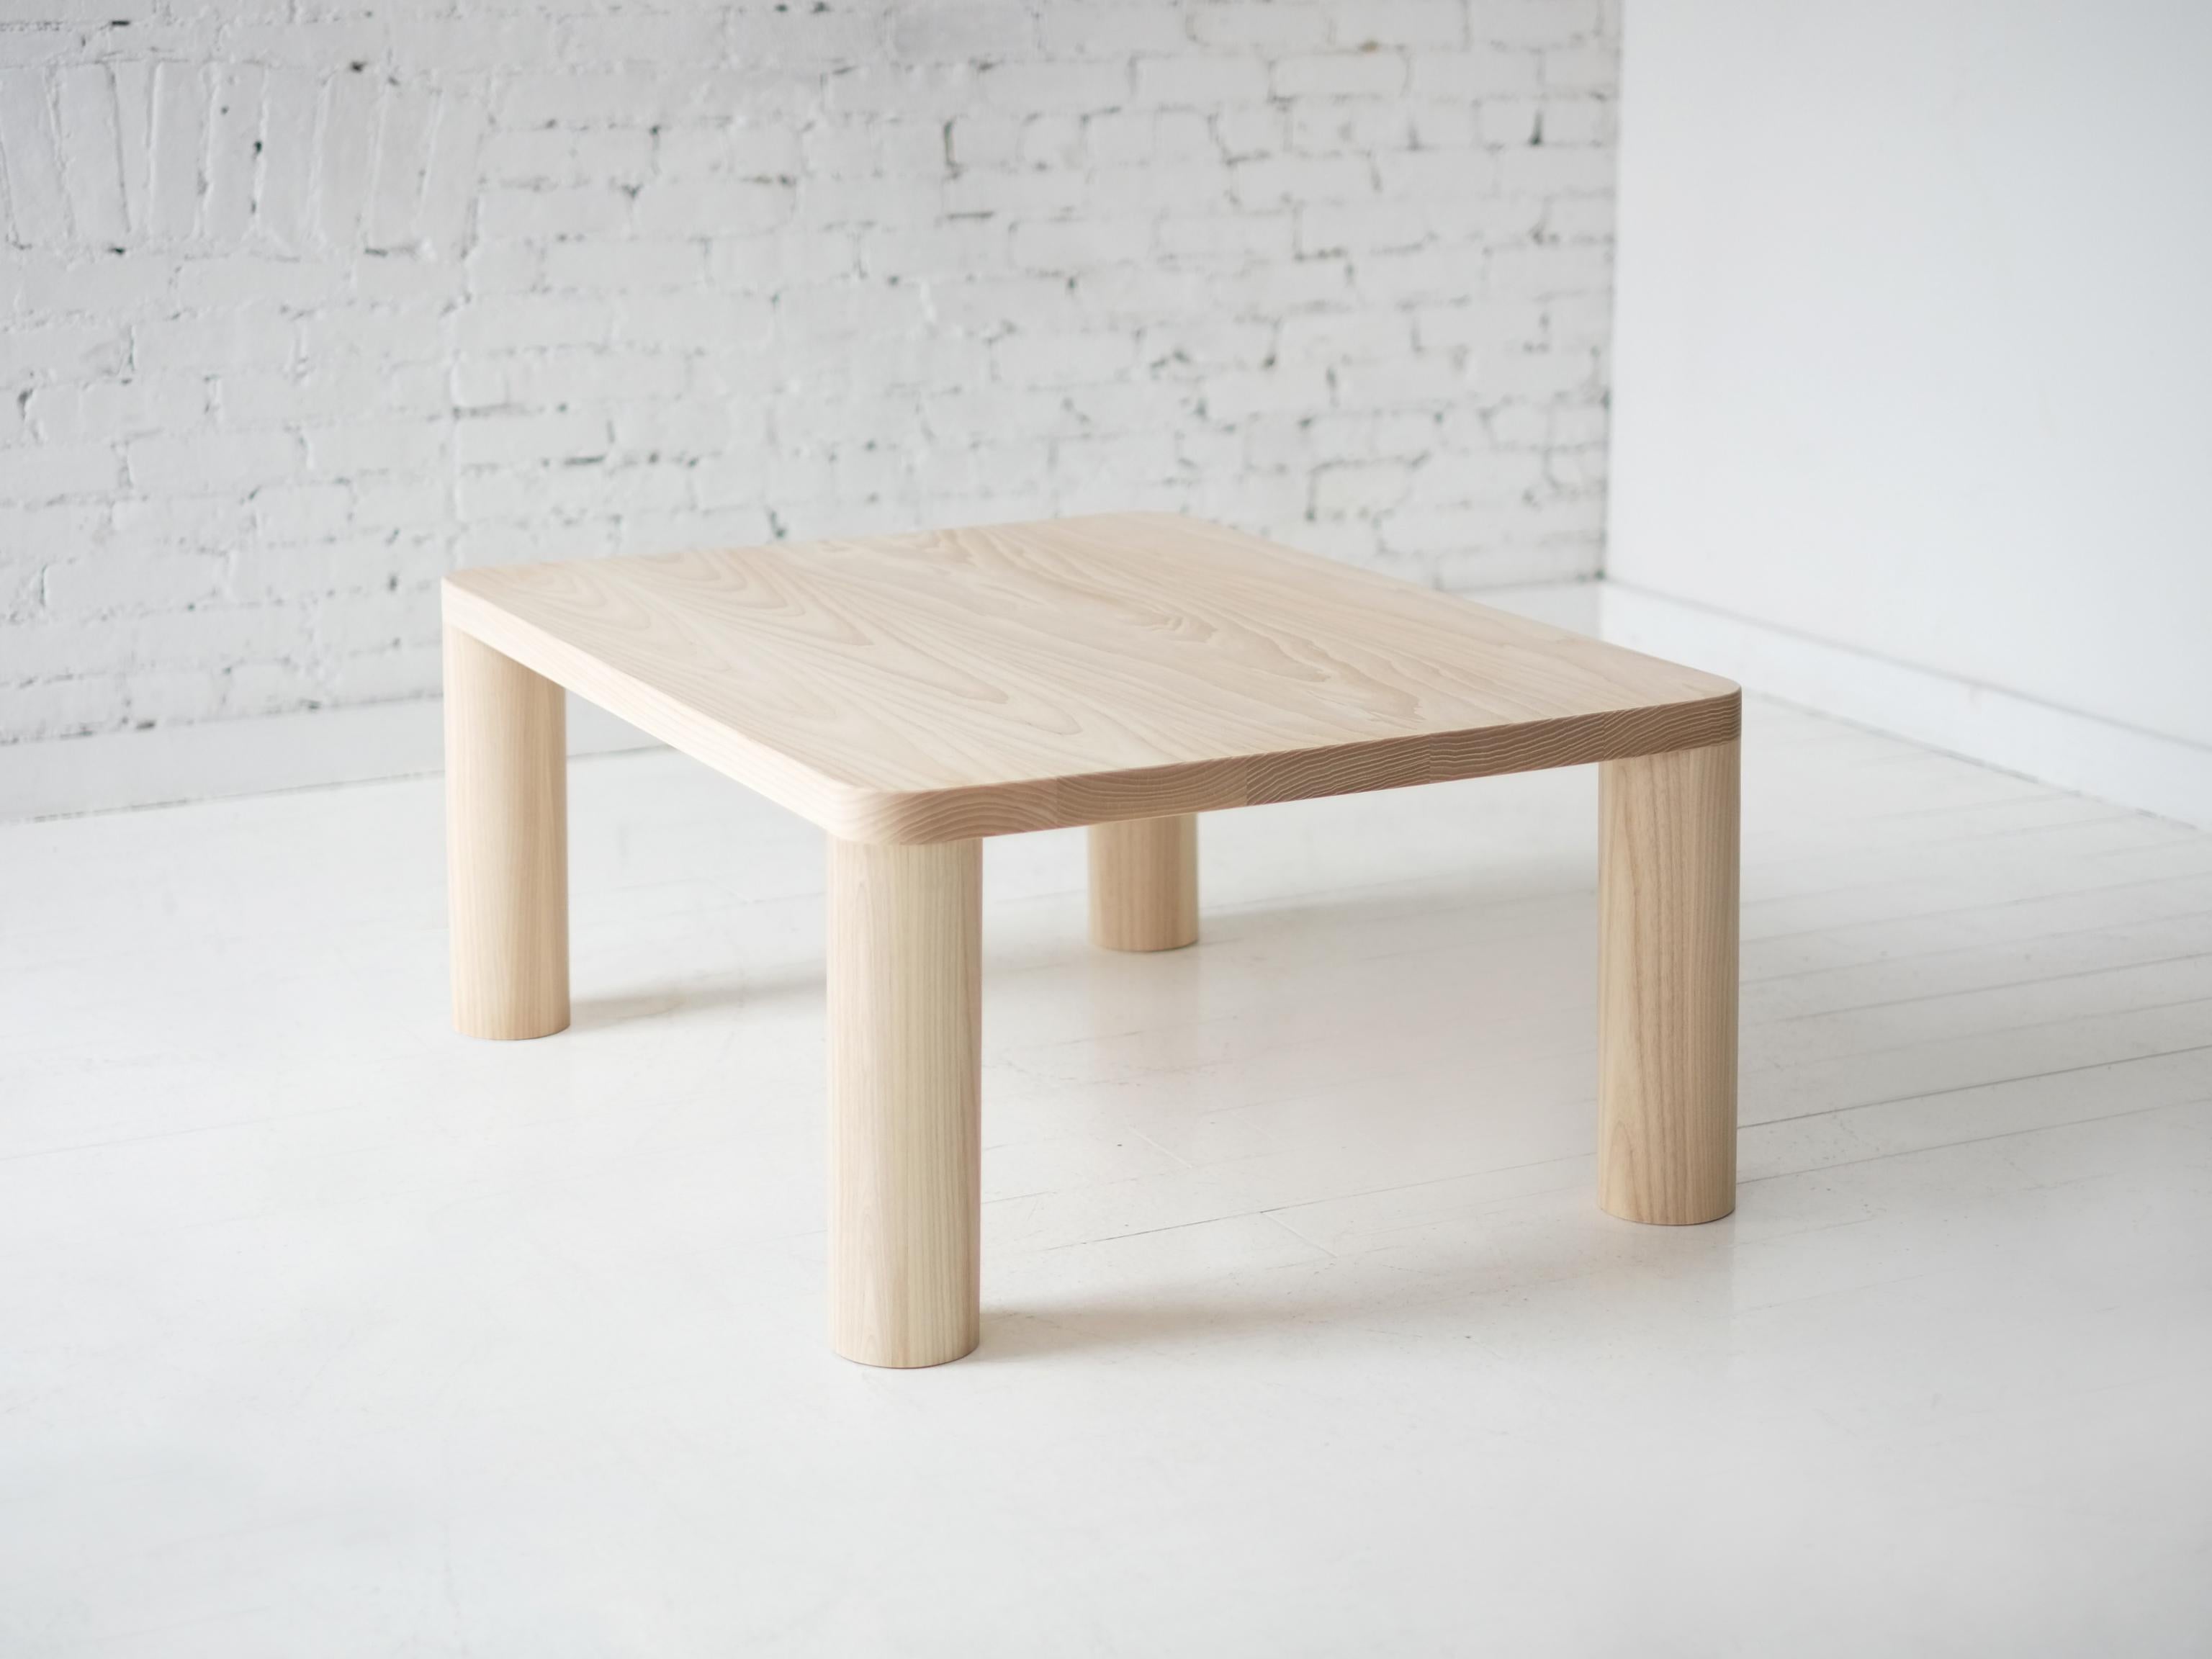 Dieser moderne, minimalistische Couchtisch aus Holz verfügt über vier große, runde Beine, die nahtlos ineinander übergehen und die Radien der Platte definieren - ein stilles, aber wirkungsvolles Detail. 

Auf Bestellung in kundenspezifischen Größen,